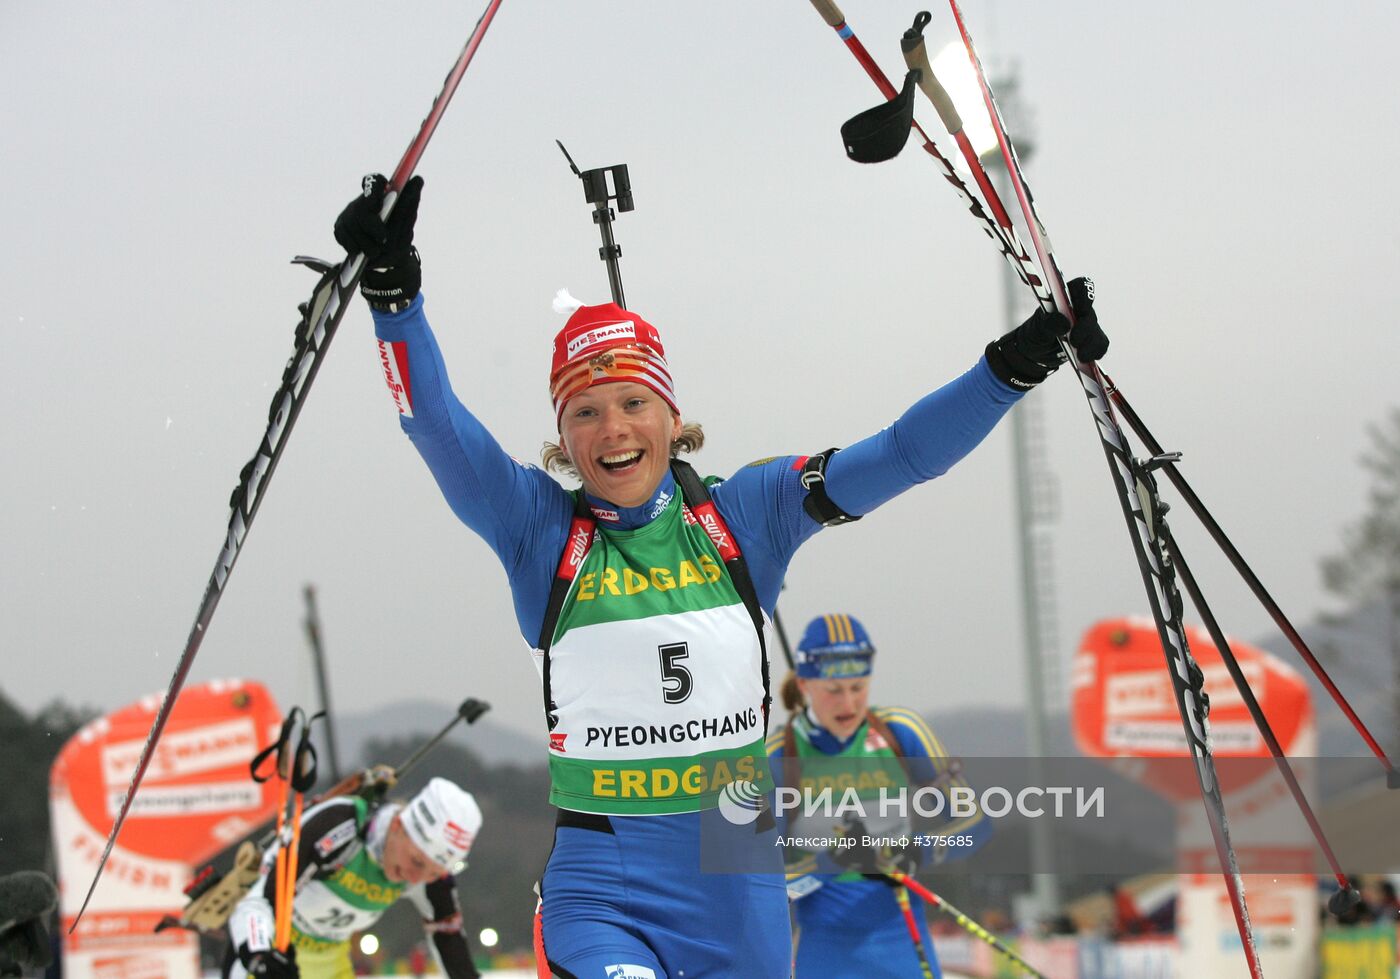 О.Зайцева победила в масс-старте на чемпионате мира по биатлону